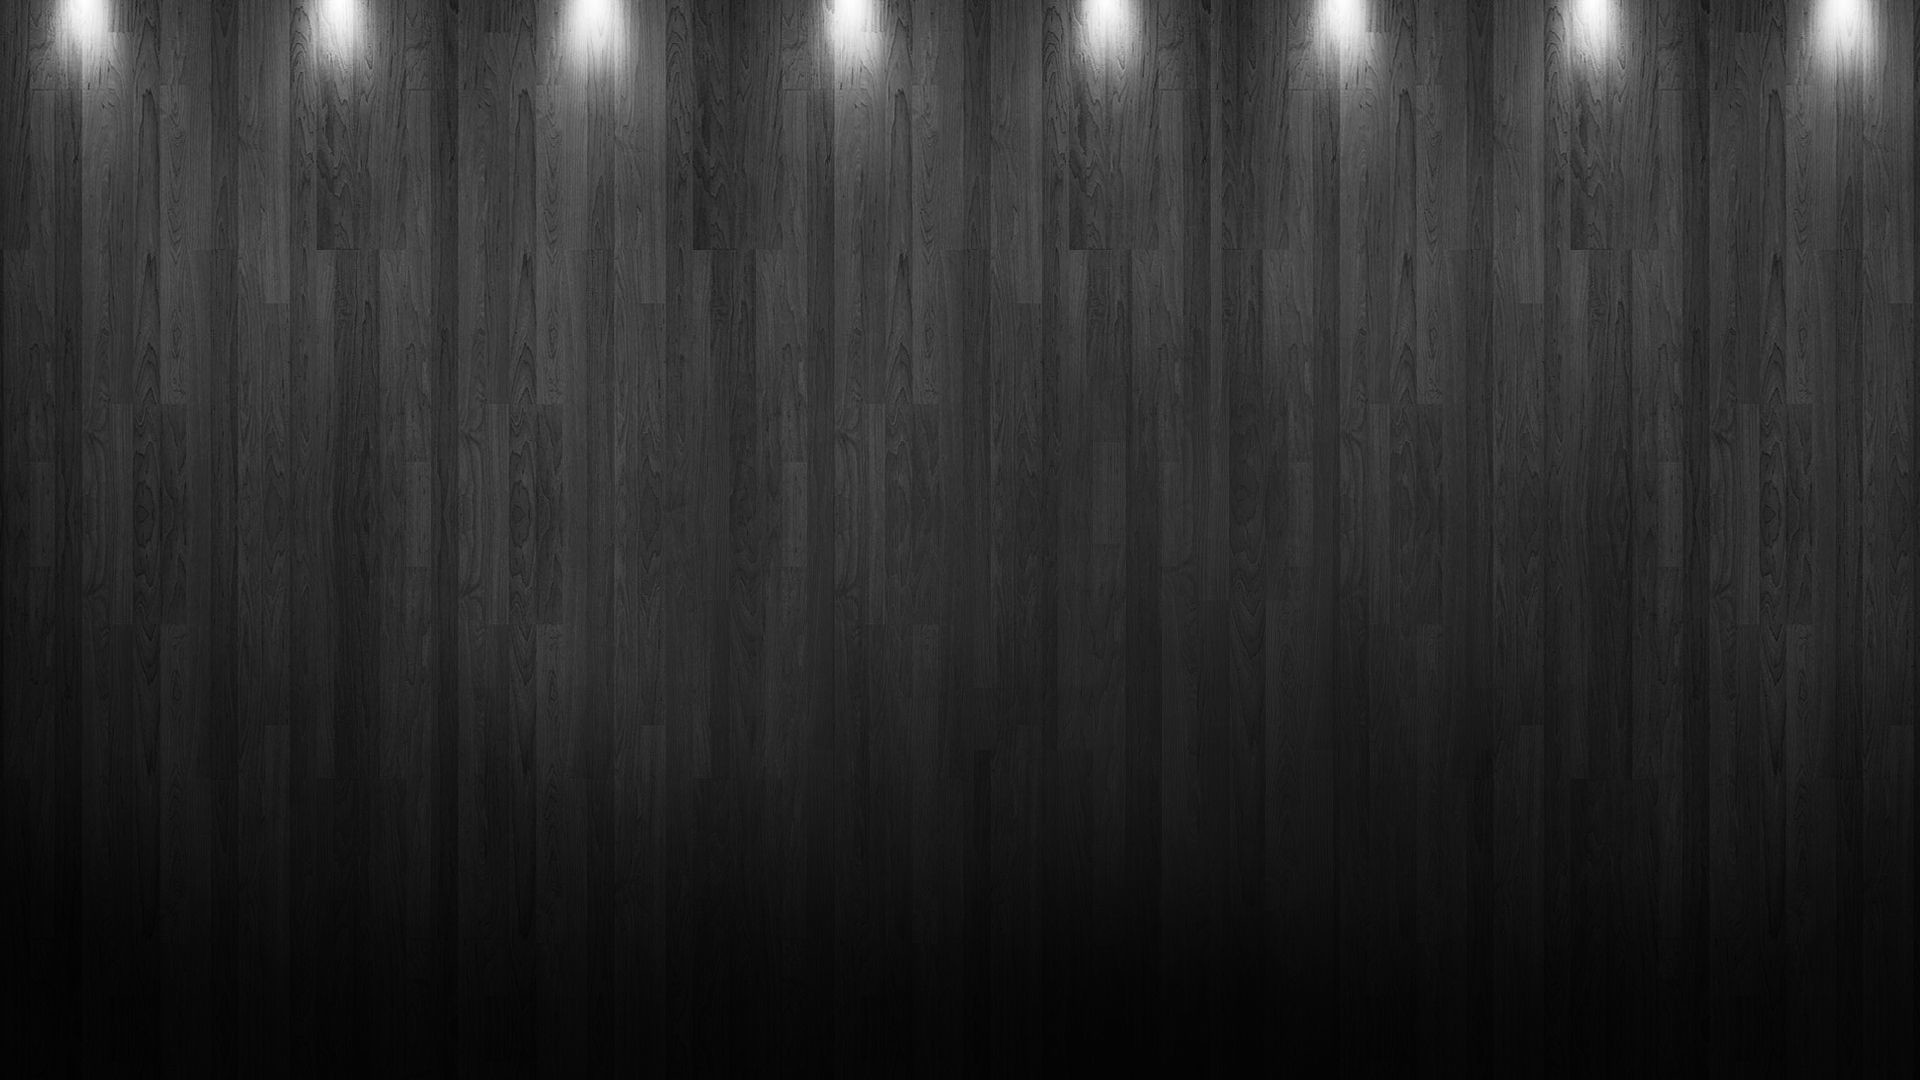 1920x1080, Dark Wood Wallpaper Hd - Black Wood Wallpaper Hd - HD Wallpaper 